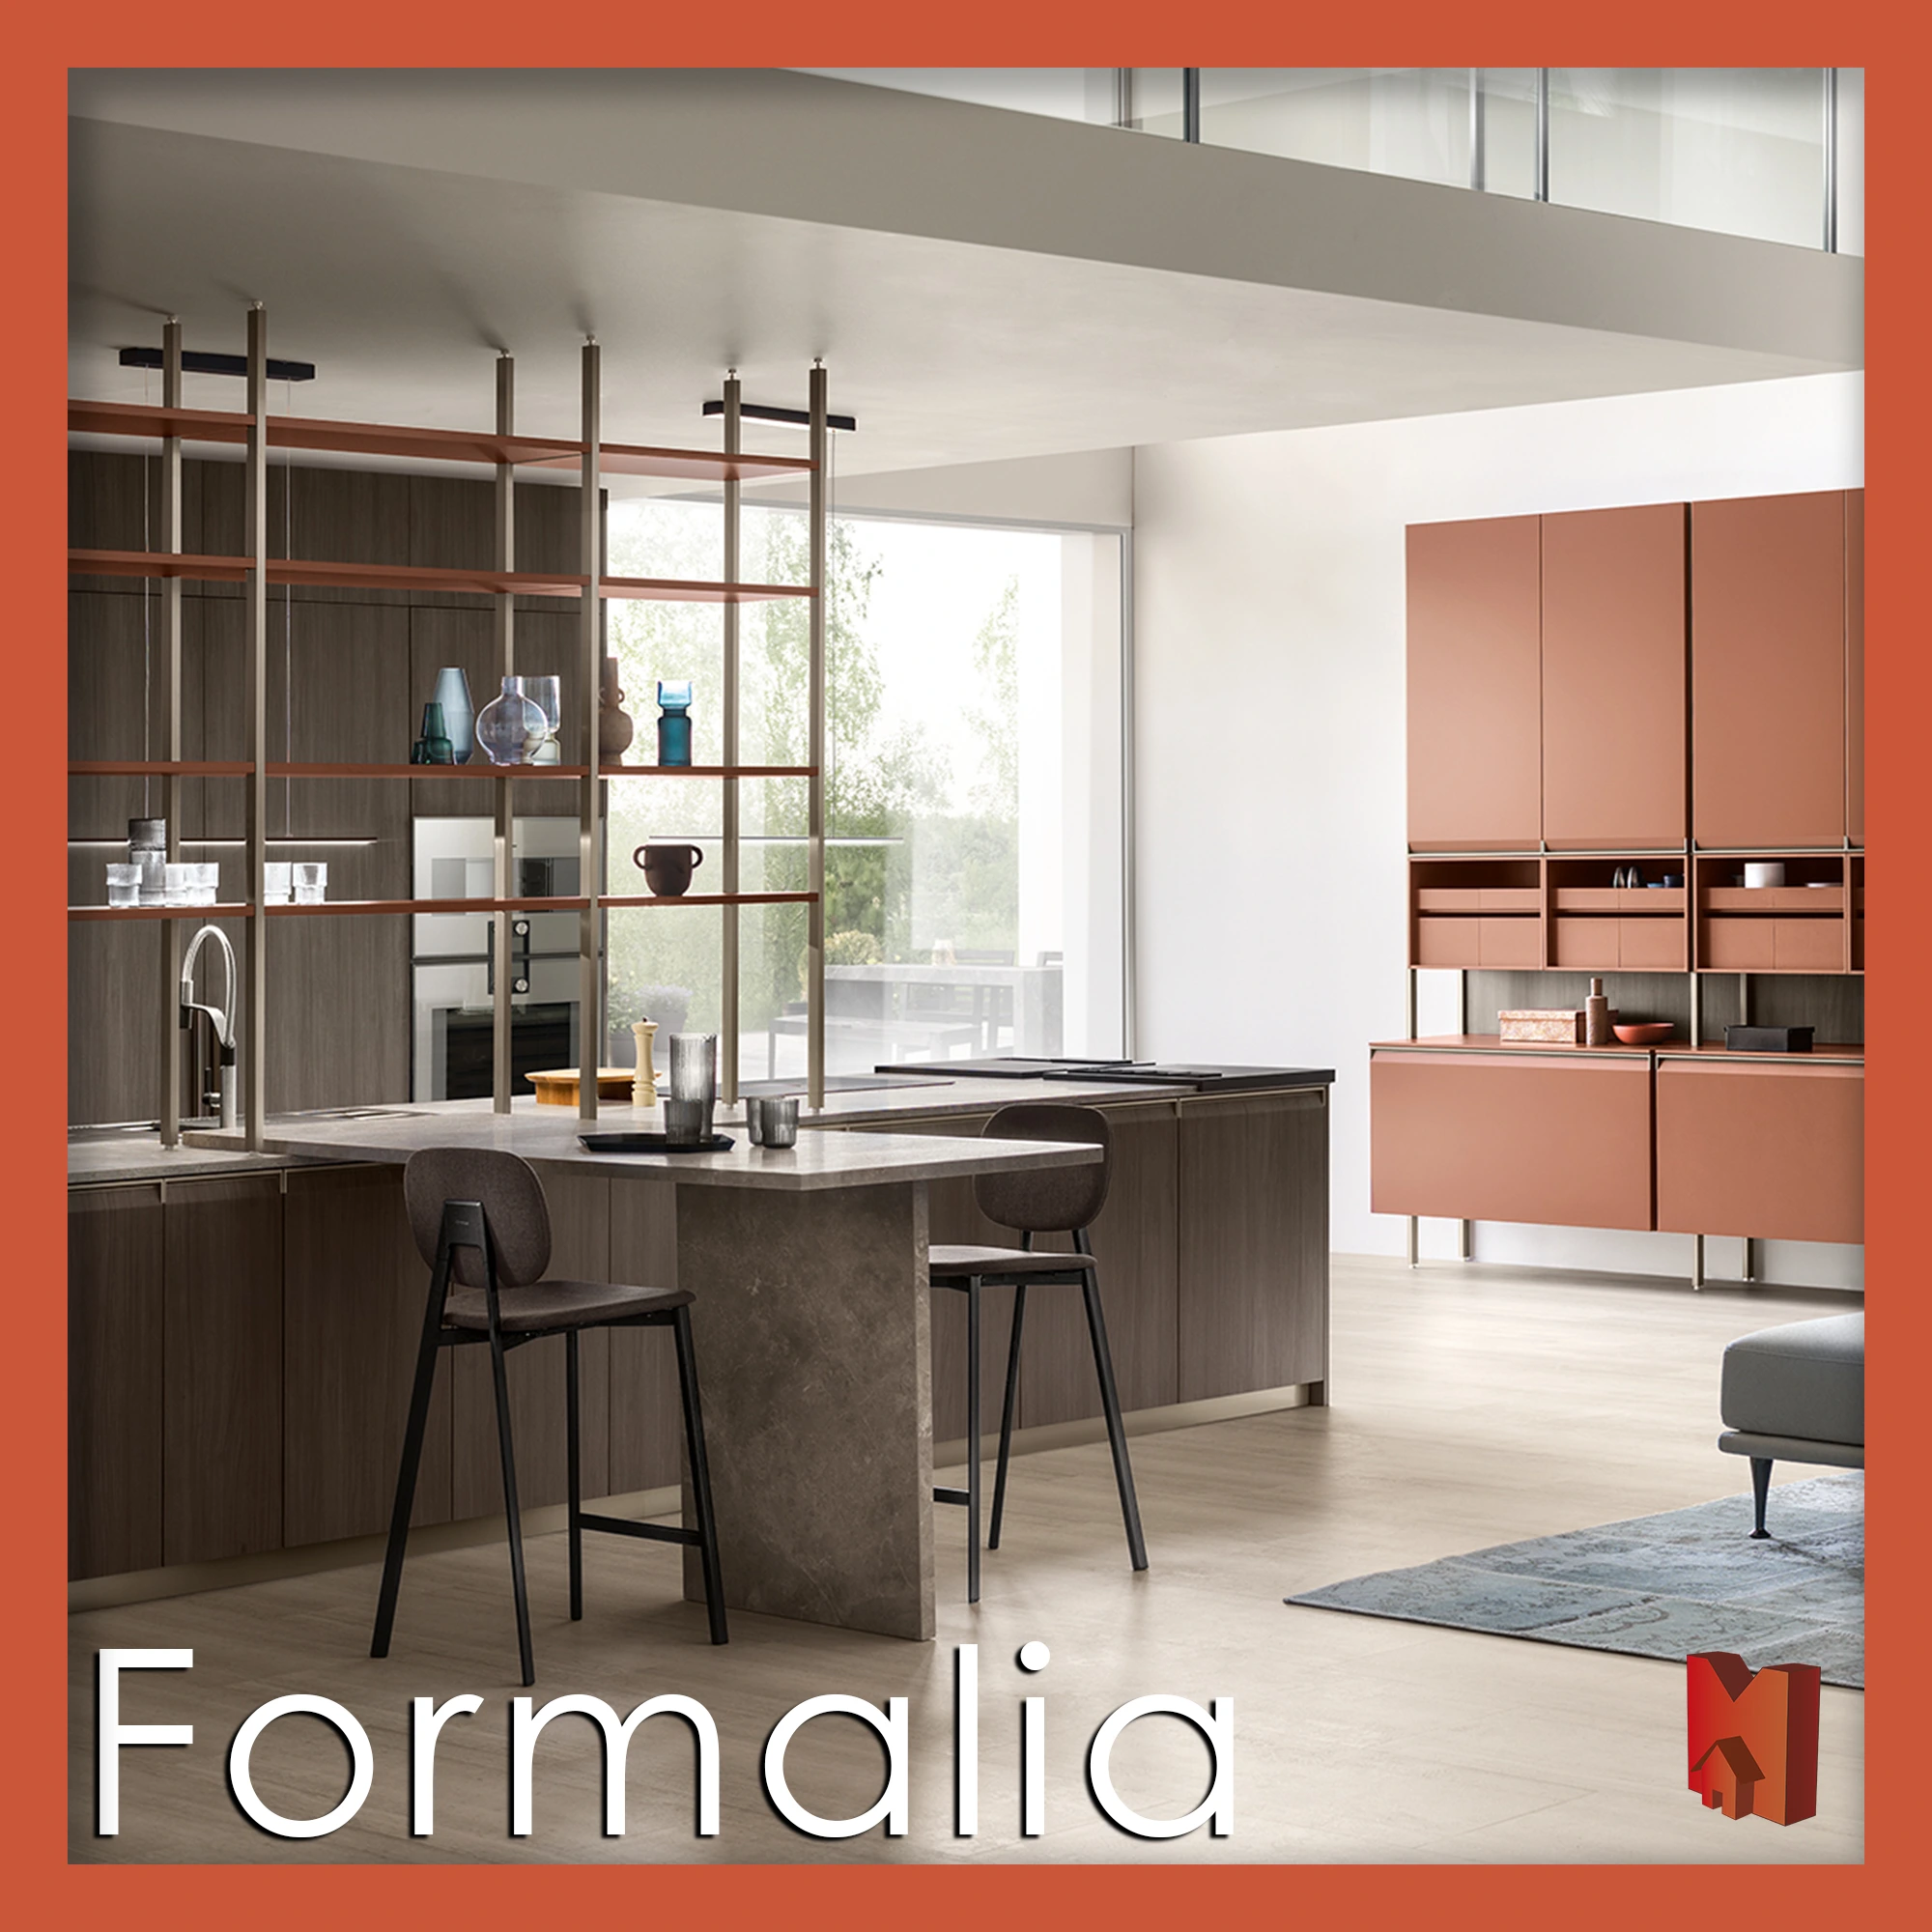 Formalia Scavolini Marinelli Design Group arredamento Roma mobili made in Italy su misura pagamento personalizzato